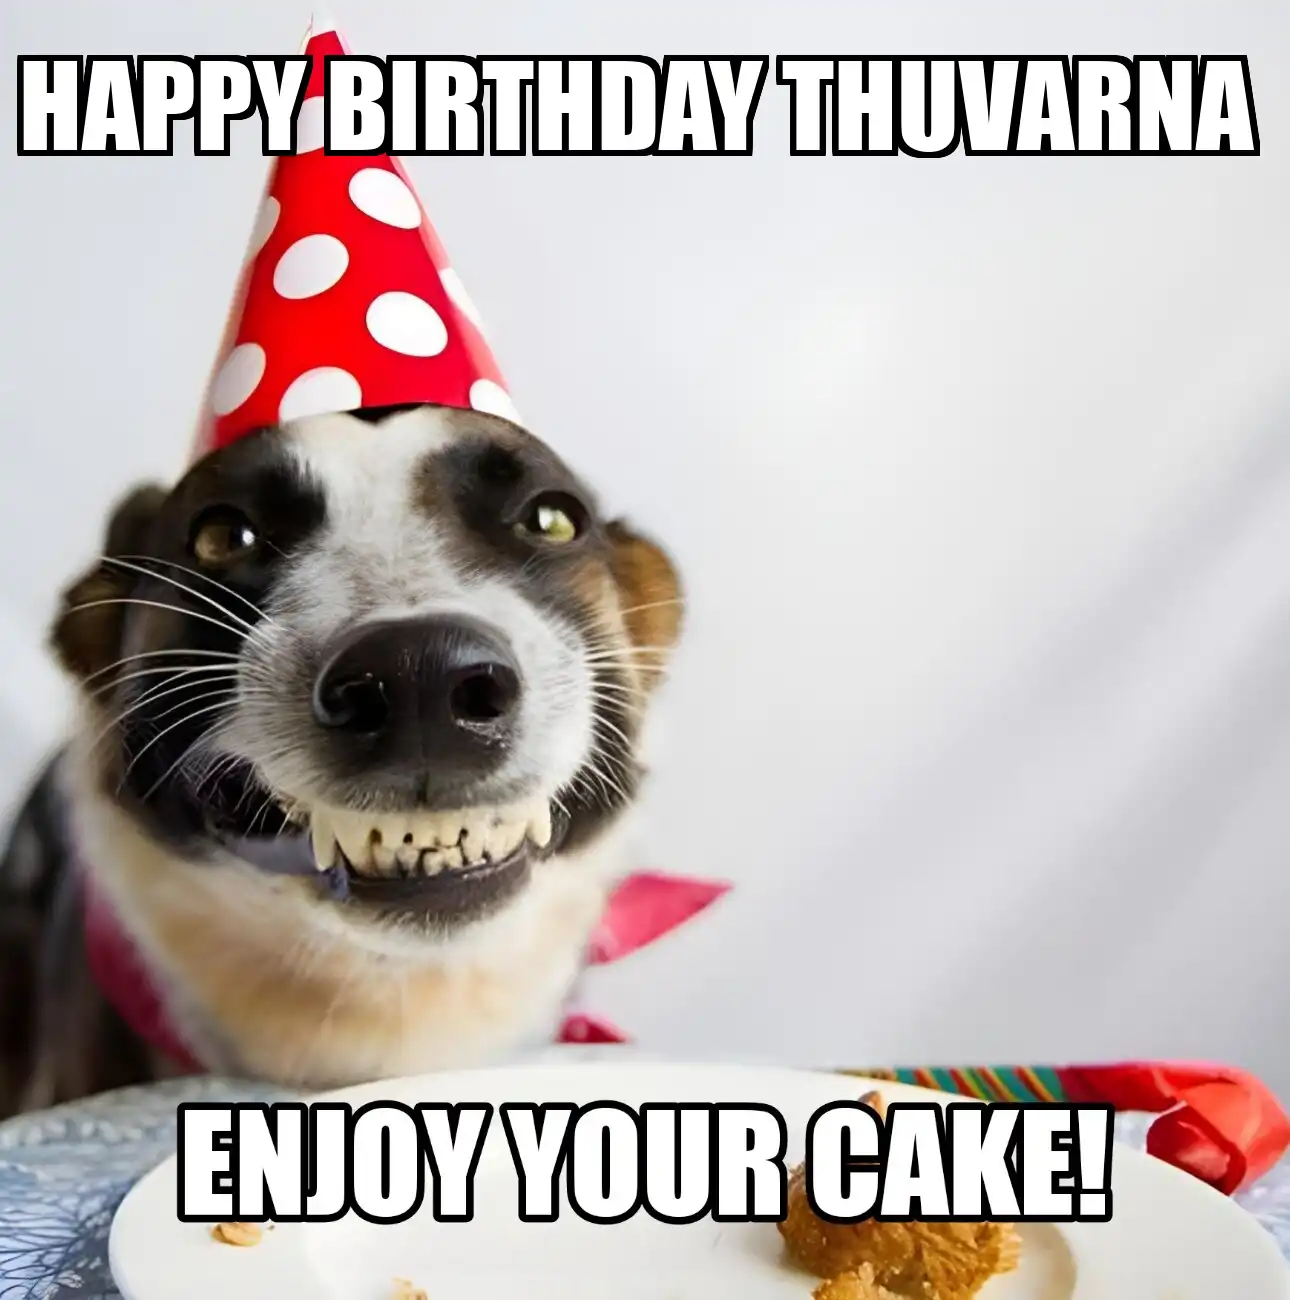 Happy Birthday Thuvarna Enjoy Your Cake Dog Meme